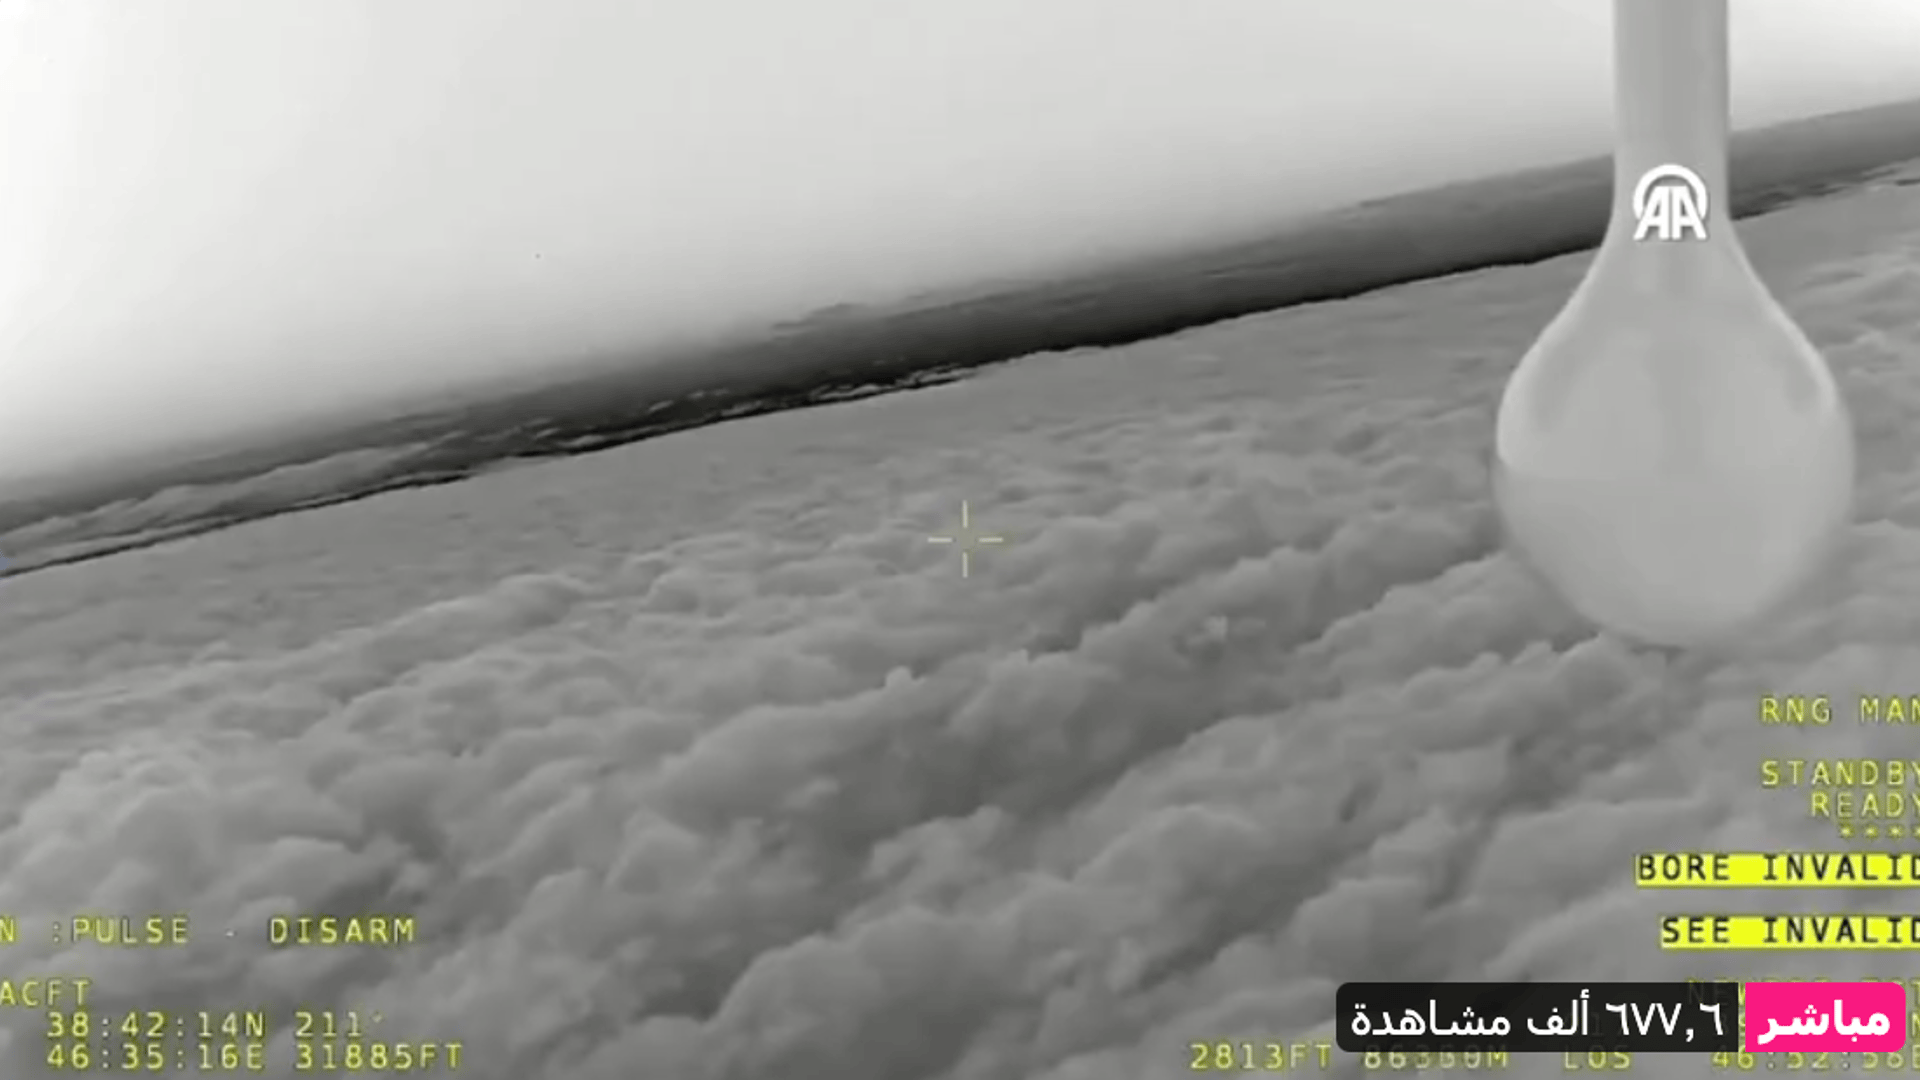 مباشر من كاميرا الطائرة التركية.. ترى موقع اختفاء رئيسي كأنه في النهار